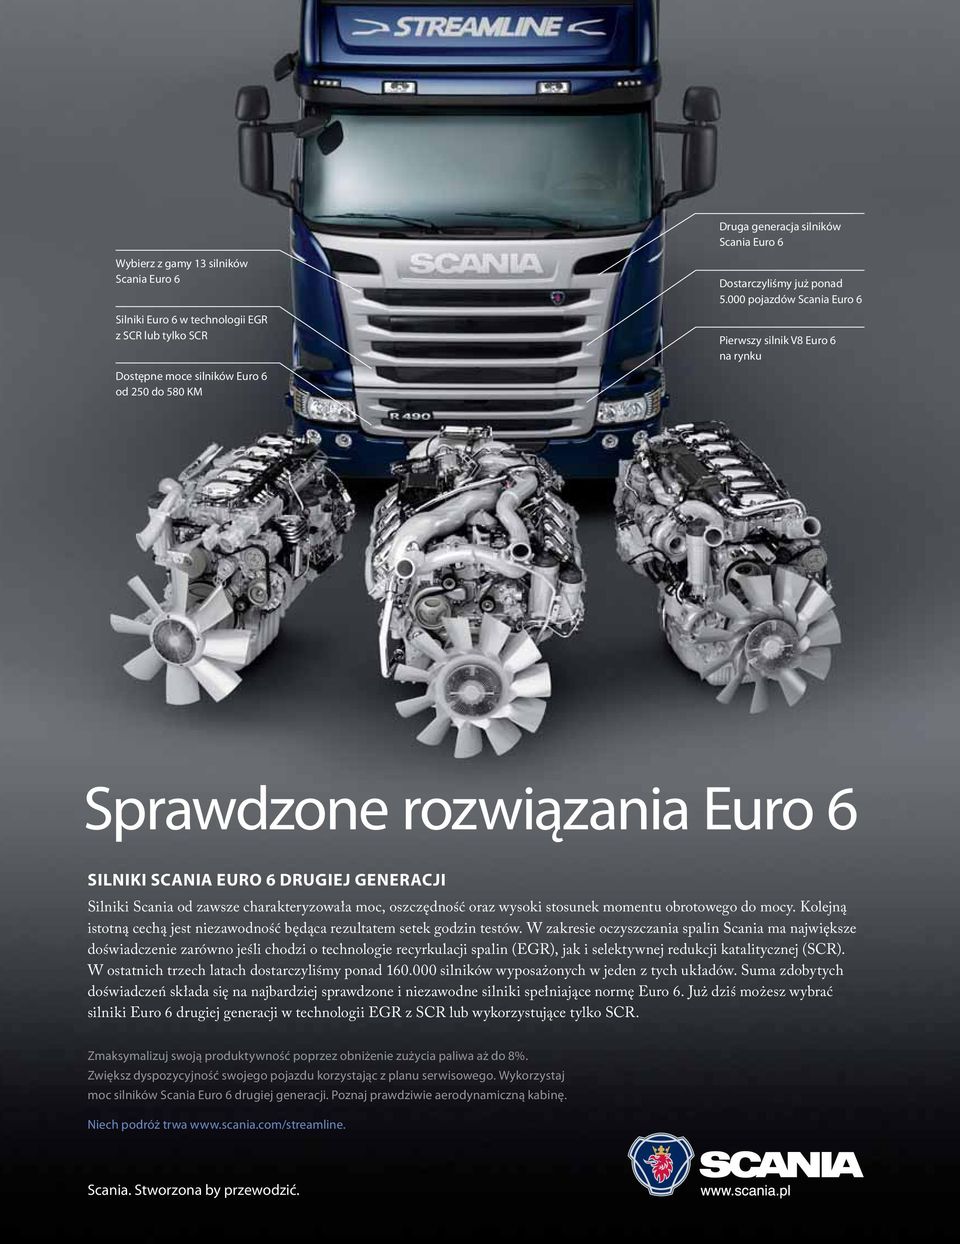 000 pojazdów Scania Euro 6 Pierwszy silnik V8 Euro 6 na rynku Sprawdzone rozwiązania Euro 6 SILNIKI SCANIA EURO 6 DRUGIEJ GENERACJI Silniki Scania od zawsze charakteryzowała moc, oszczędność oraz